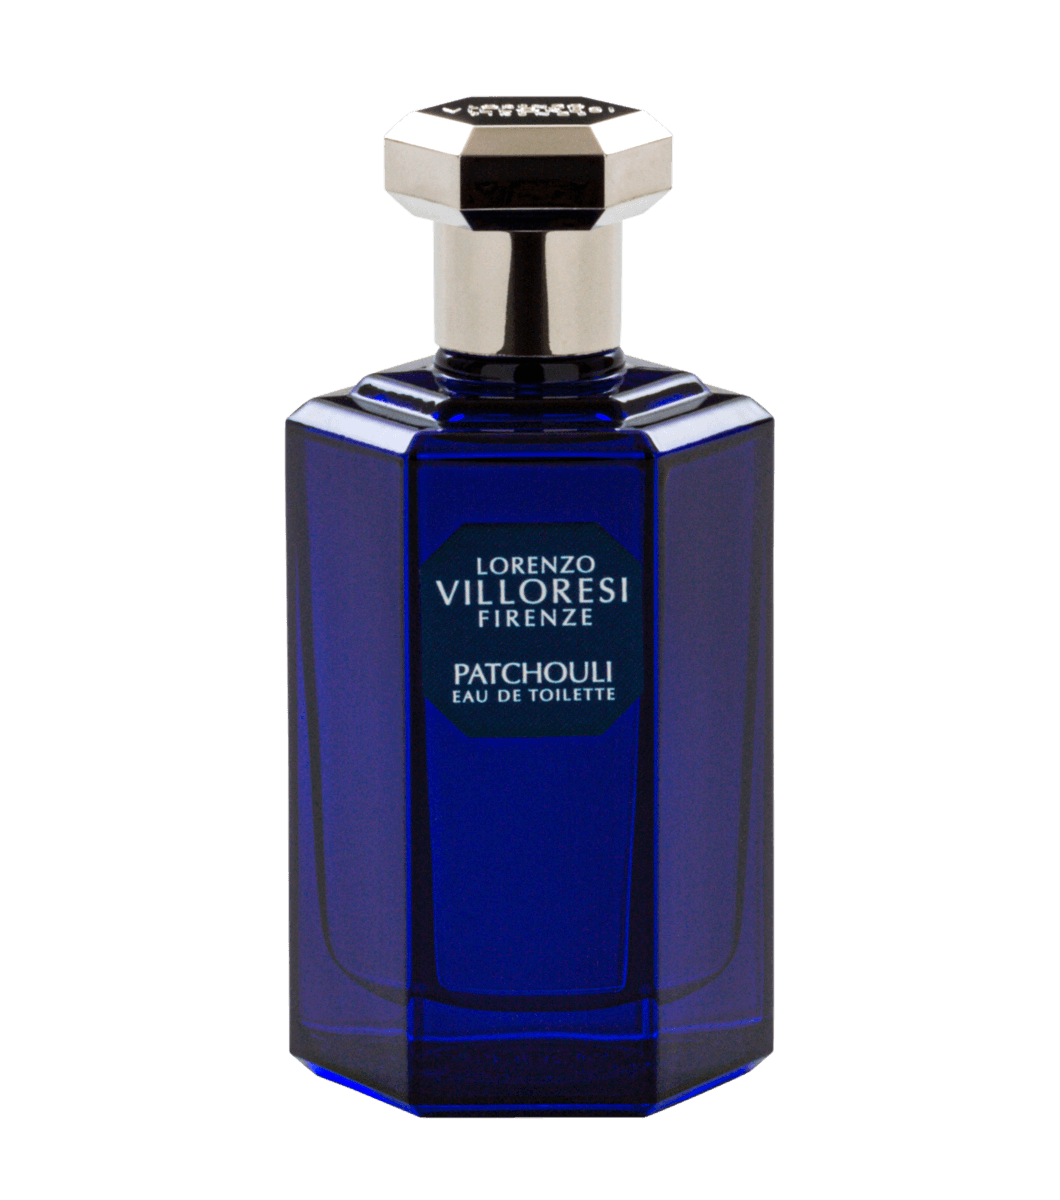 Lorenzo Villoresi - Patchouli eau de toilette 100ml | Perfume Lounge